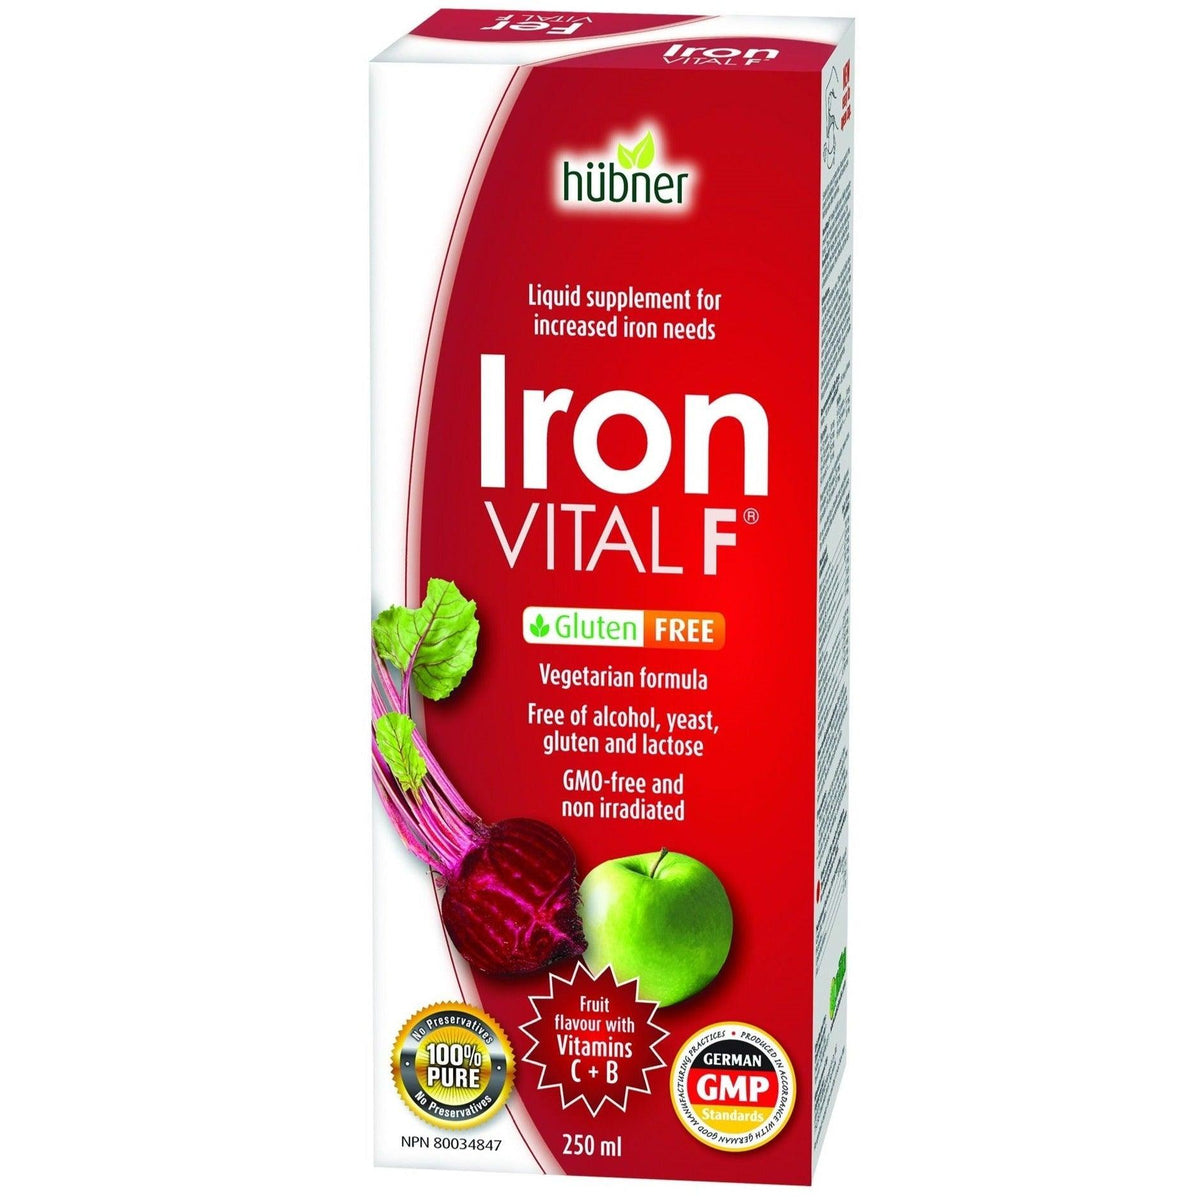 Hubner Iron Vital F 250mL* Minerals - Iron at Village Vitamin Store